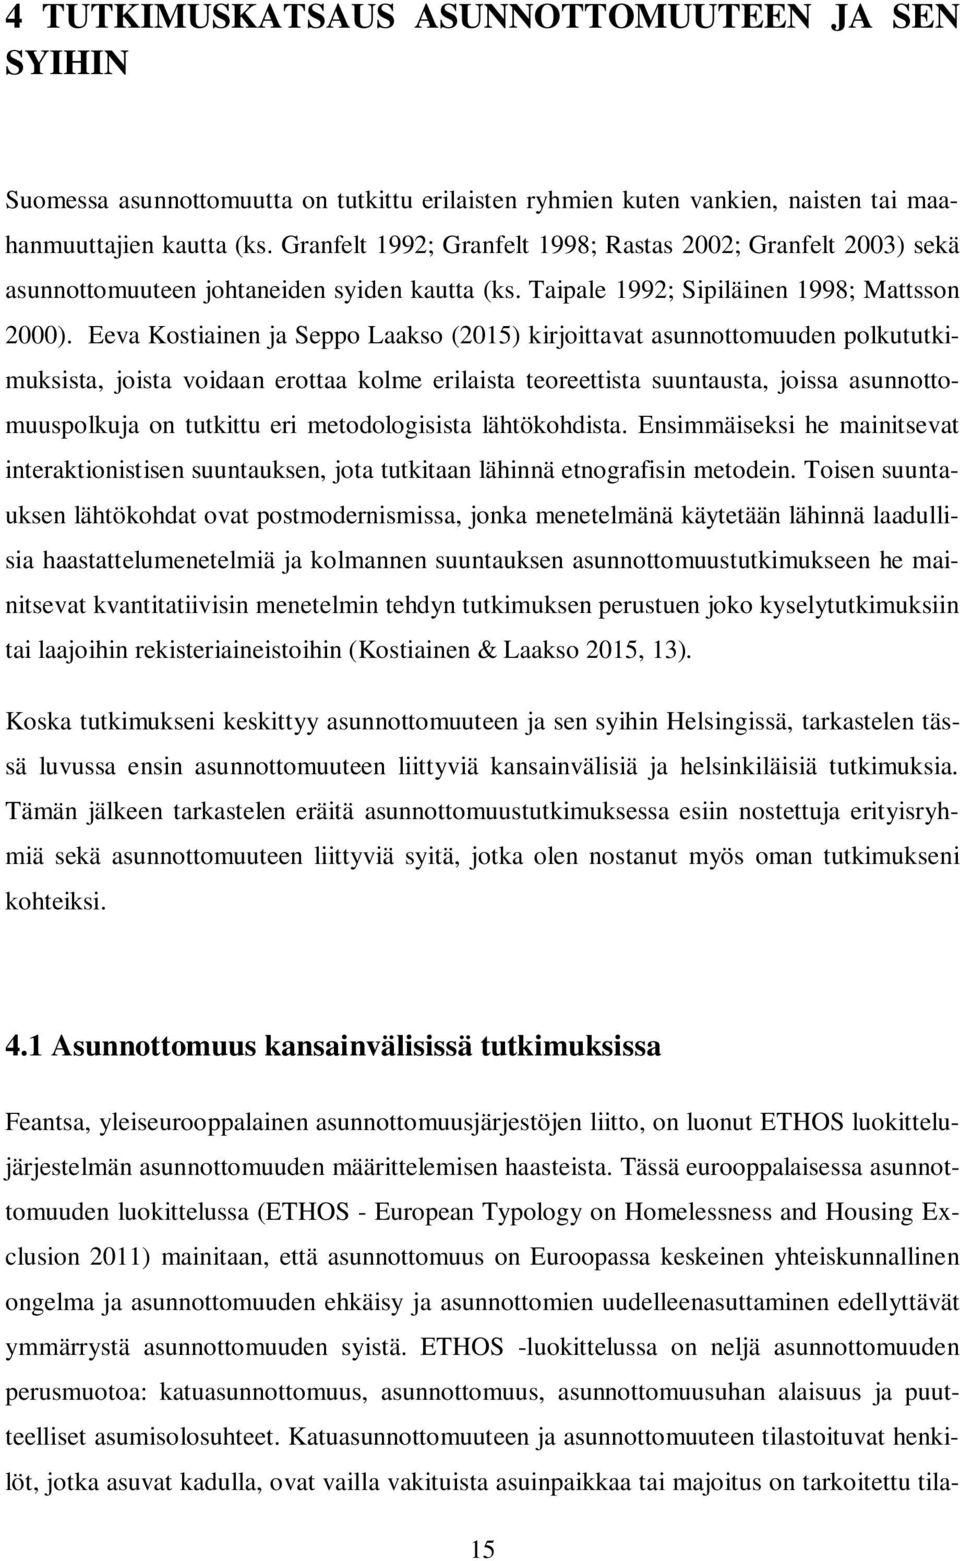 Eeva Kostiainen ja Seppo Laakso (2015) kirjoittavat asunnottomuuden polkututkimuksista, joista voidaan erottaa kolme erilaista teoreettista suuntausta, joissa asunnottomuuspolkuja on tutkittu eri